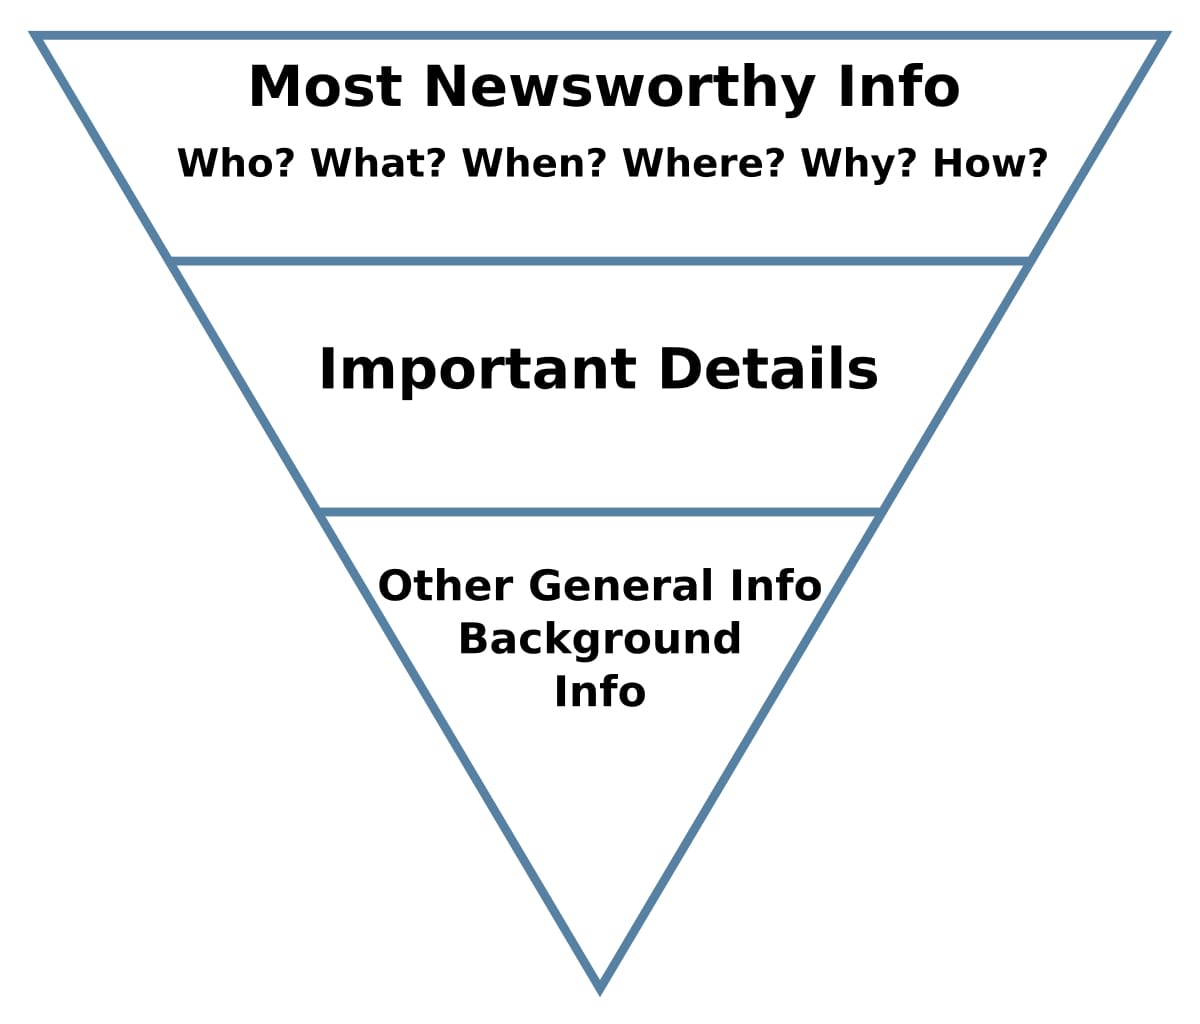 inverted pyramid scheme in journalism